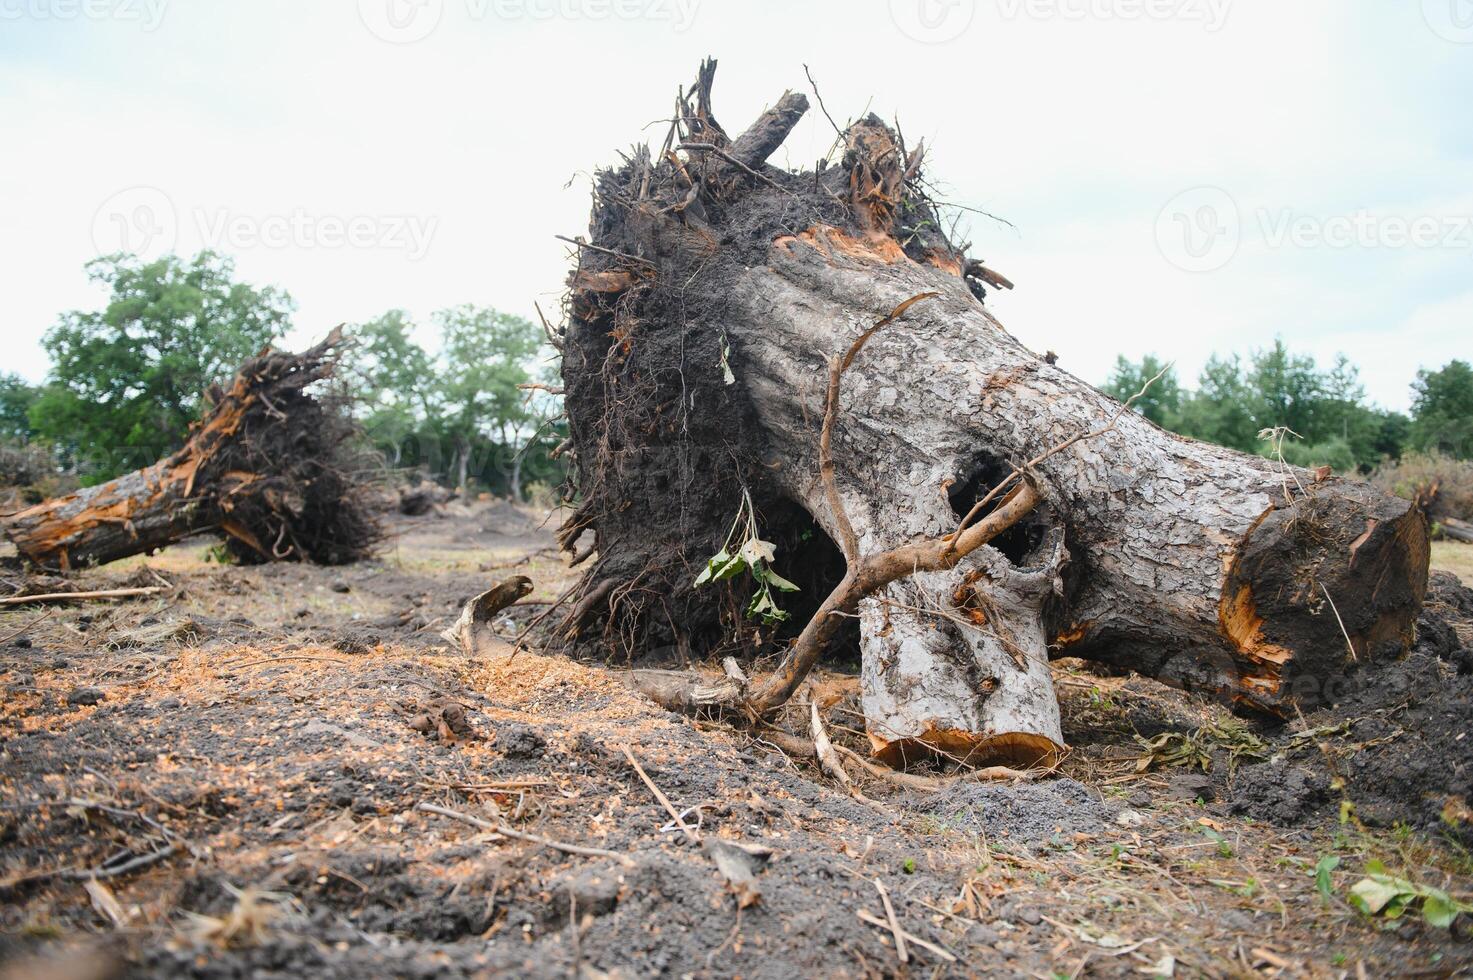 desmatamento de Meio Ambiente problema, chuva floresta destruído para óleo Palma plantações foto